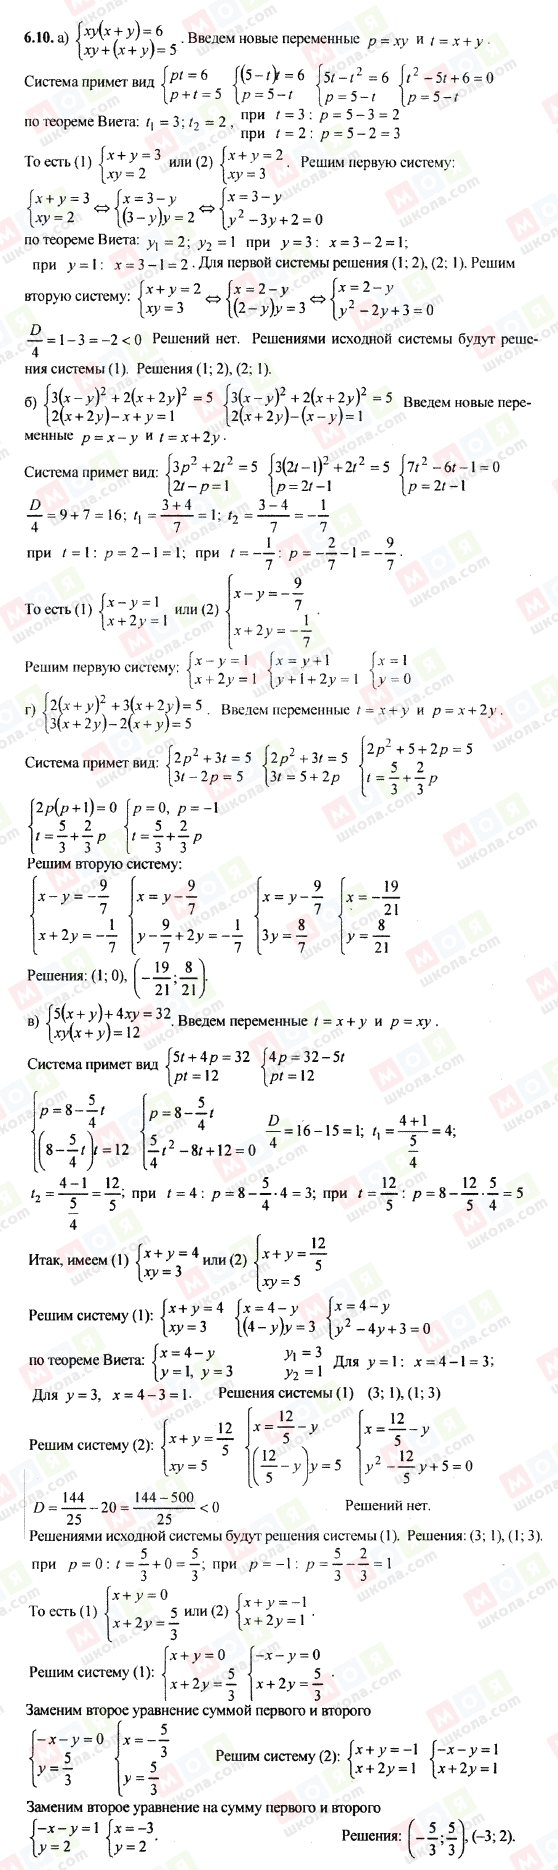 ГДЗ Алгебра 9 класс страница 6.10